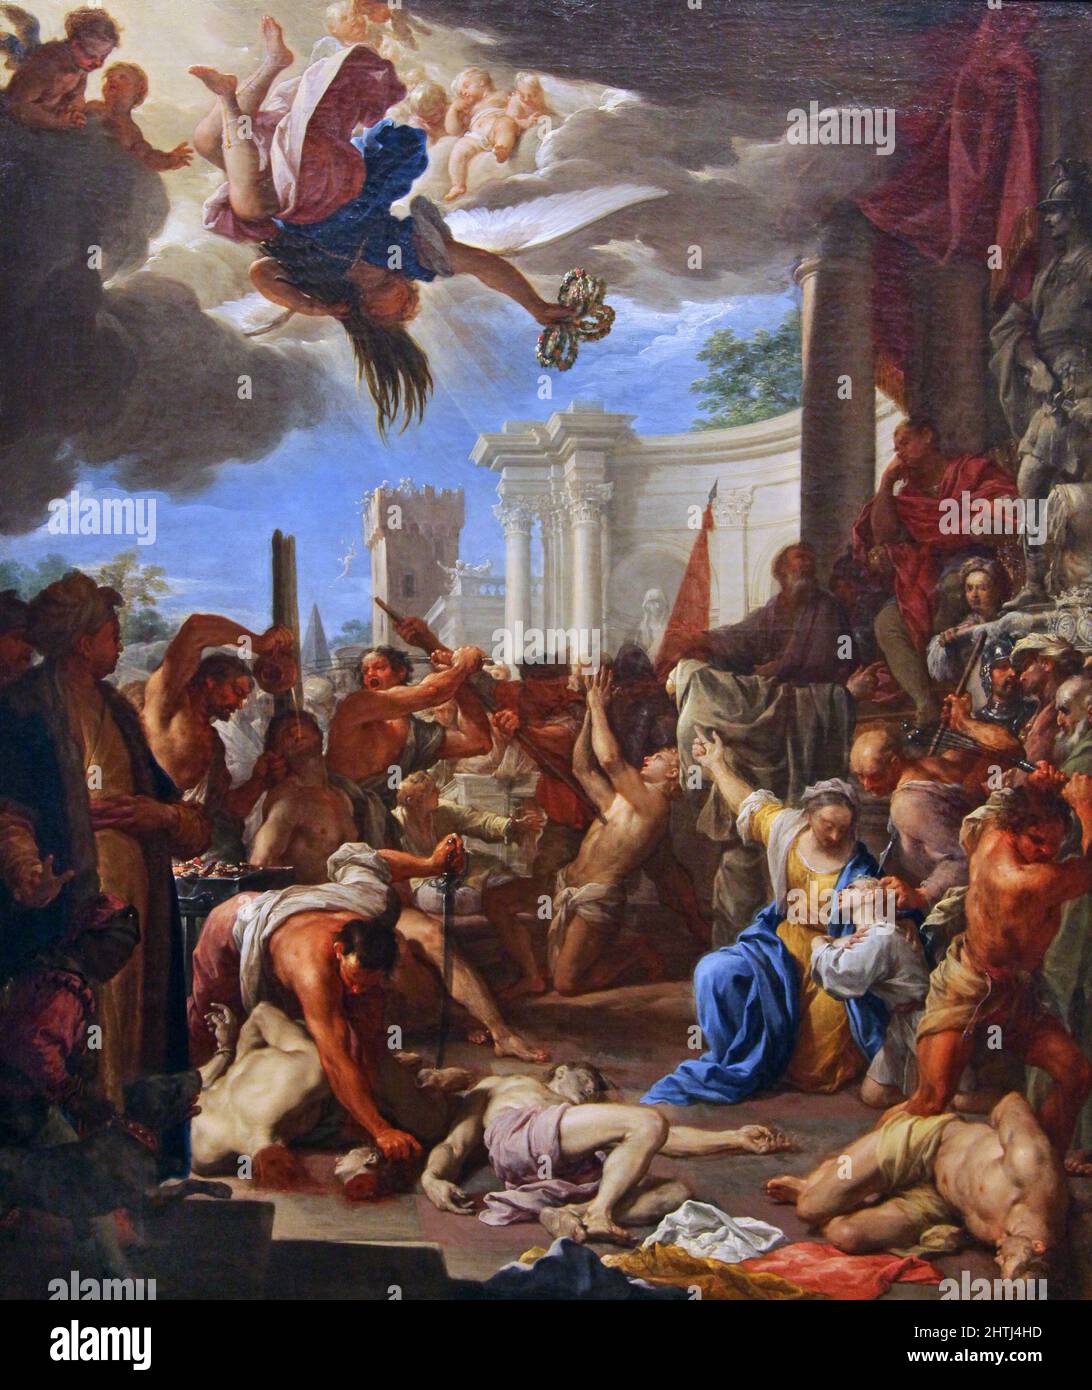 Das Martyrium der sieben Söhne (1709) des italienischen Malers Francesco Trevisani (1656-1746), der in der Zeit entweder als frühes Rokoko oder als Spätbarock (barochetto) bezeichnet wurde. Stockfoto